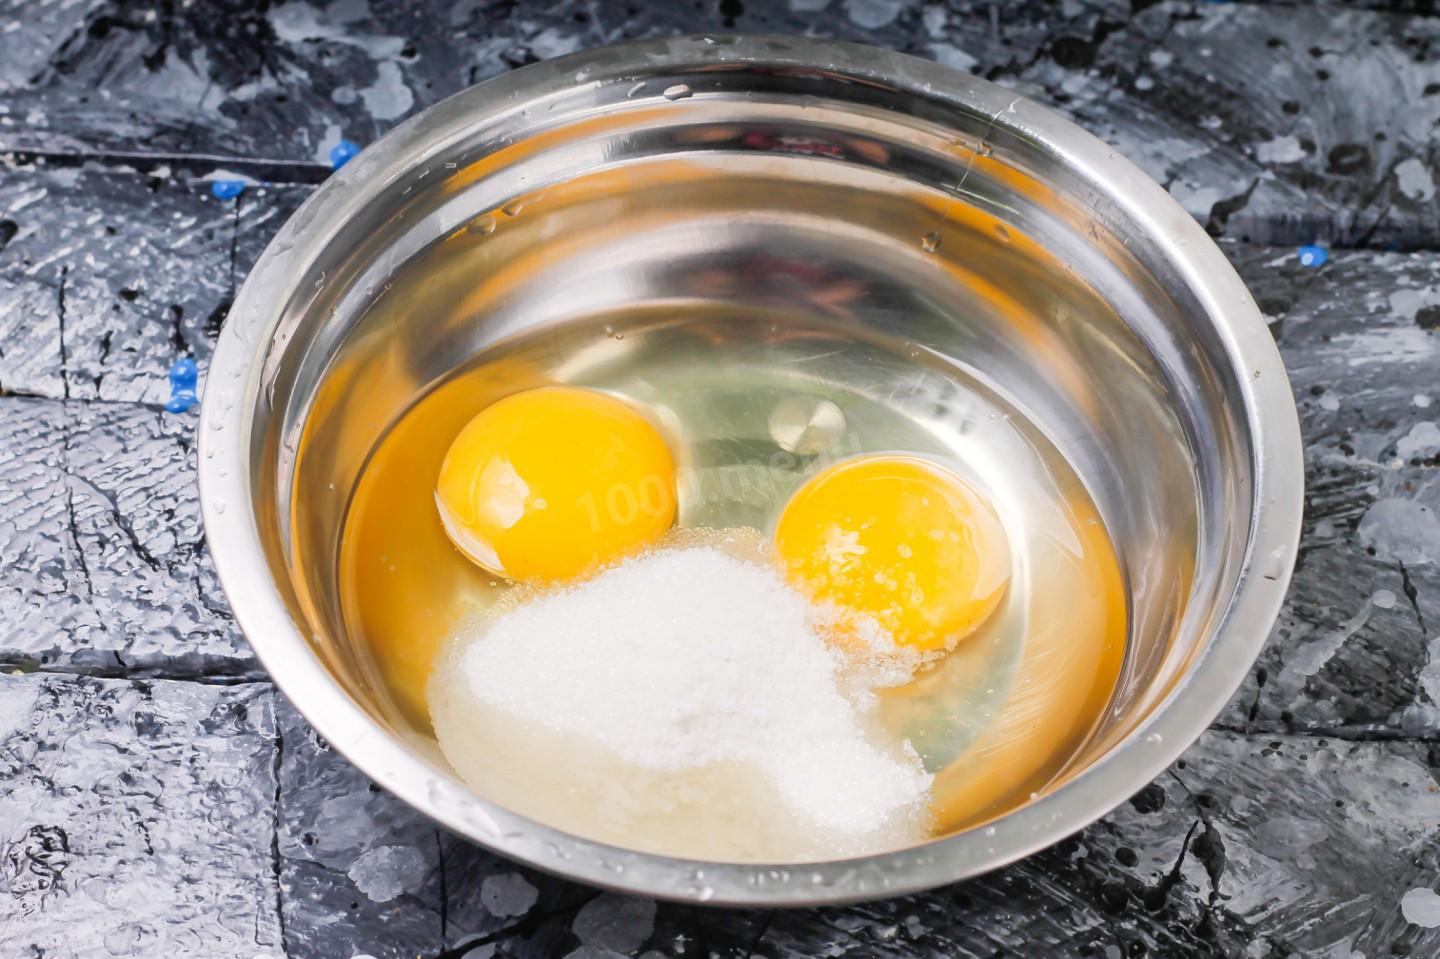 Тесто стакан кипятка. Блины 1 стакан молока 1 стакан кипятка 2 яйца. Разбить яйцо в кипяток. Яйца в кружке кипятком. Пиалка яйцо кипяток.